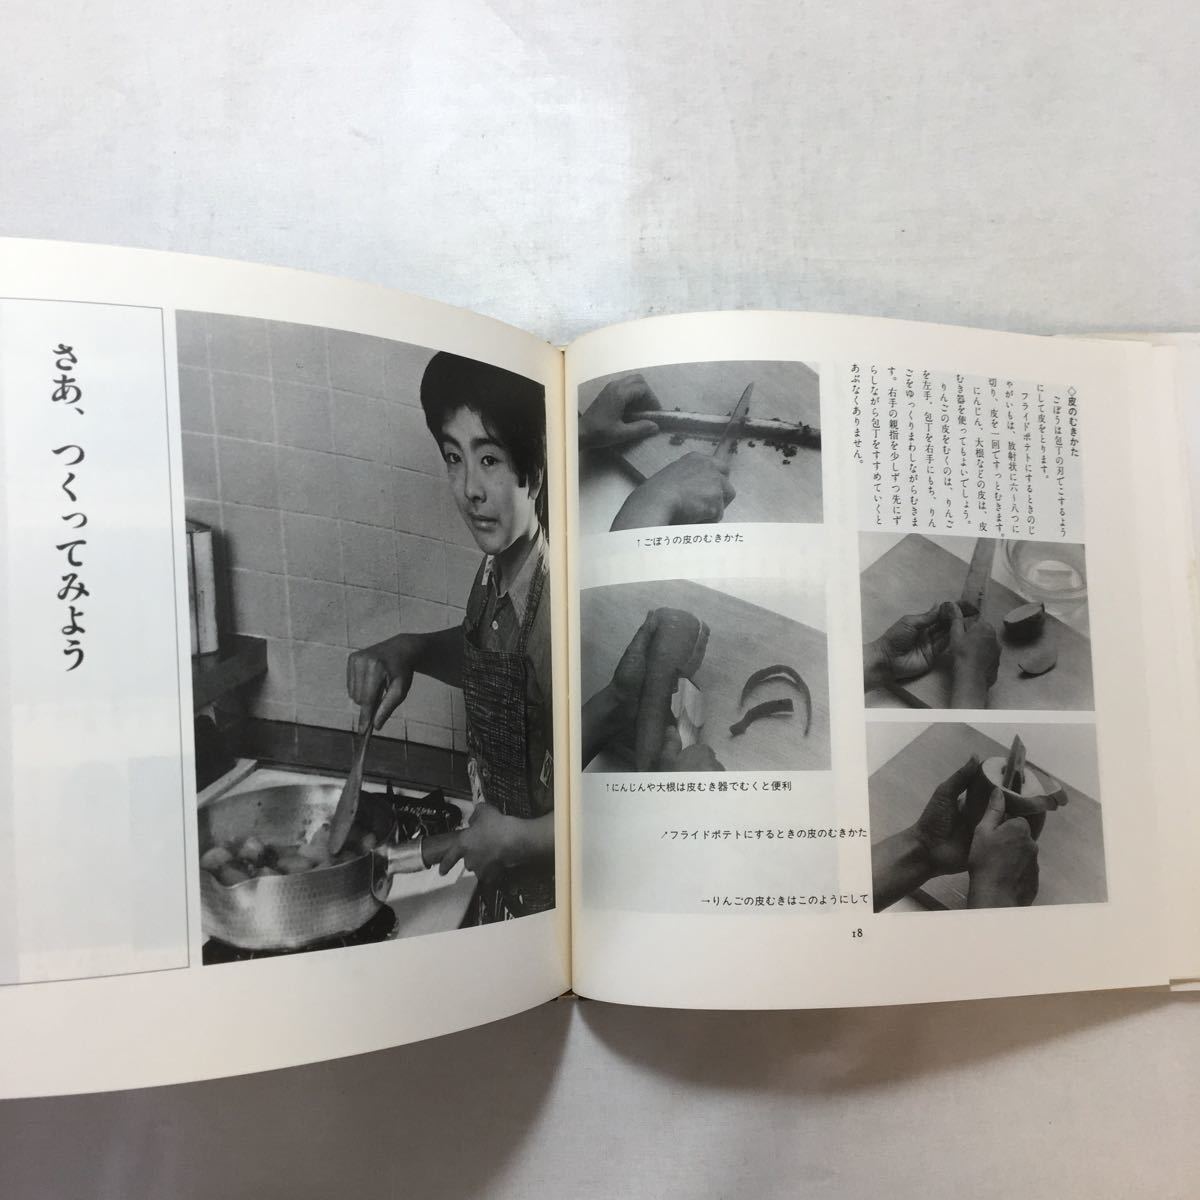 zaa-253♪料理をつくる　村上昭子(著)　子どもとつくるシリーズ19　大月書店(1987年)